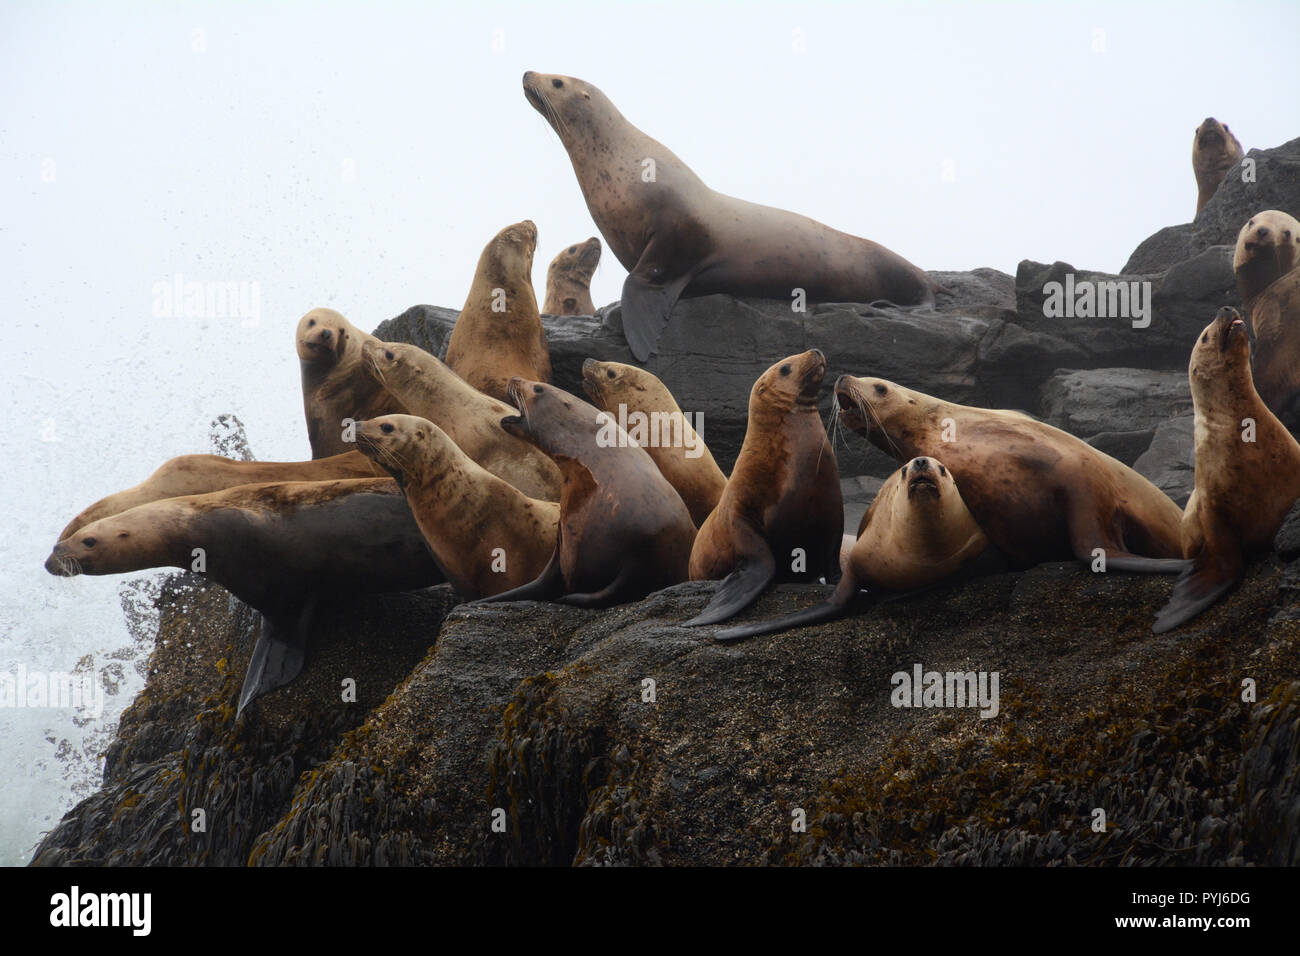 Parte de una colonia de leones marinos de Steller en un criadero durante la temporada de cría, en las Islas Aleutianas, el Mar de Bering, Alaska. Foto de stock